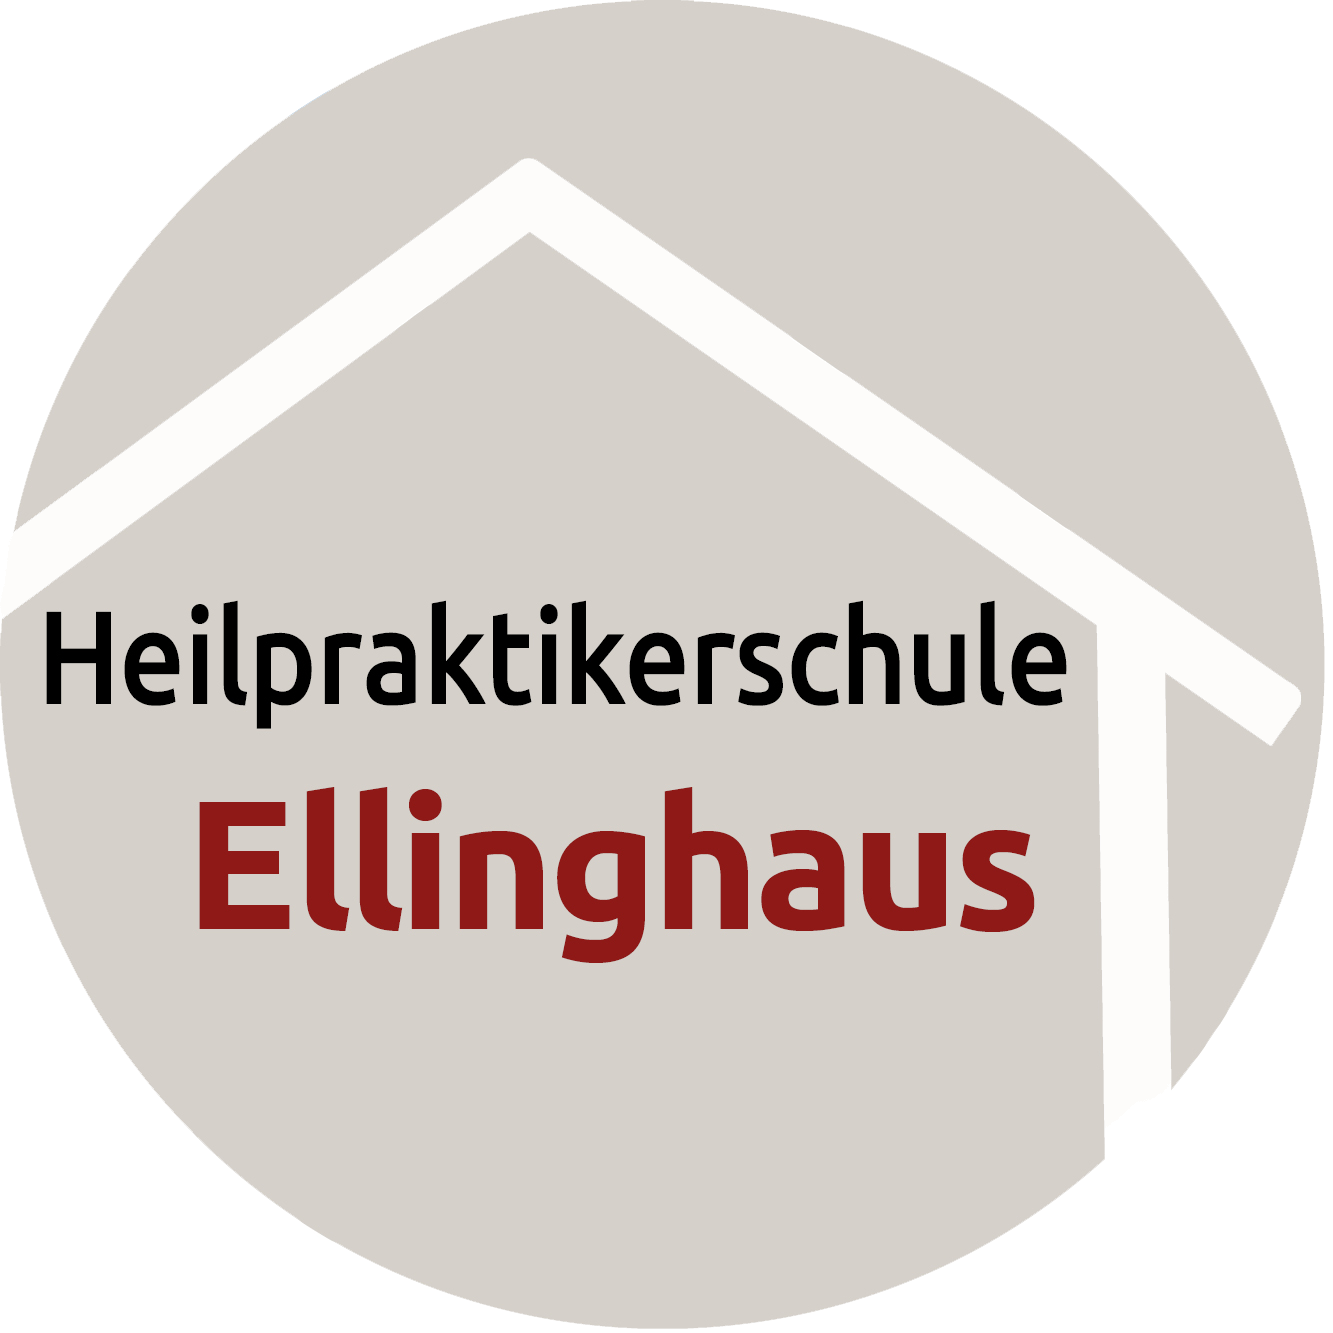 Featured image for “Ich bin Heilpraktikerin in Ausbildung”